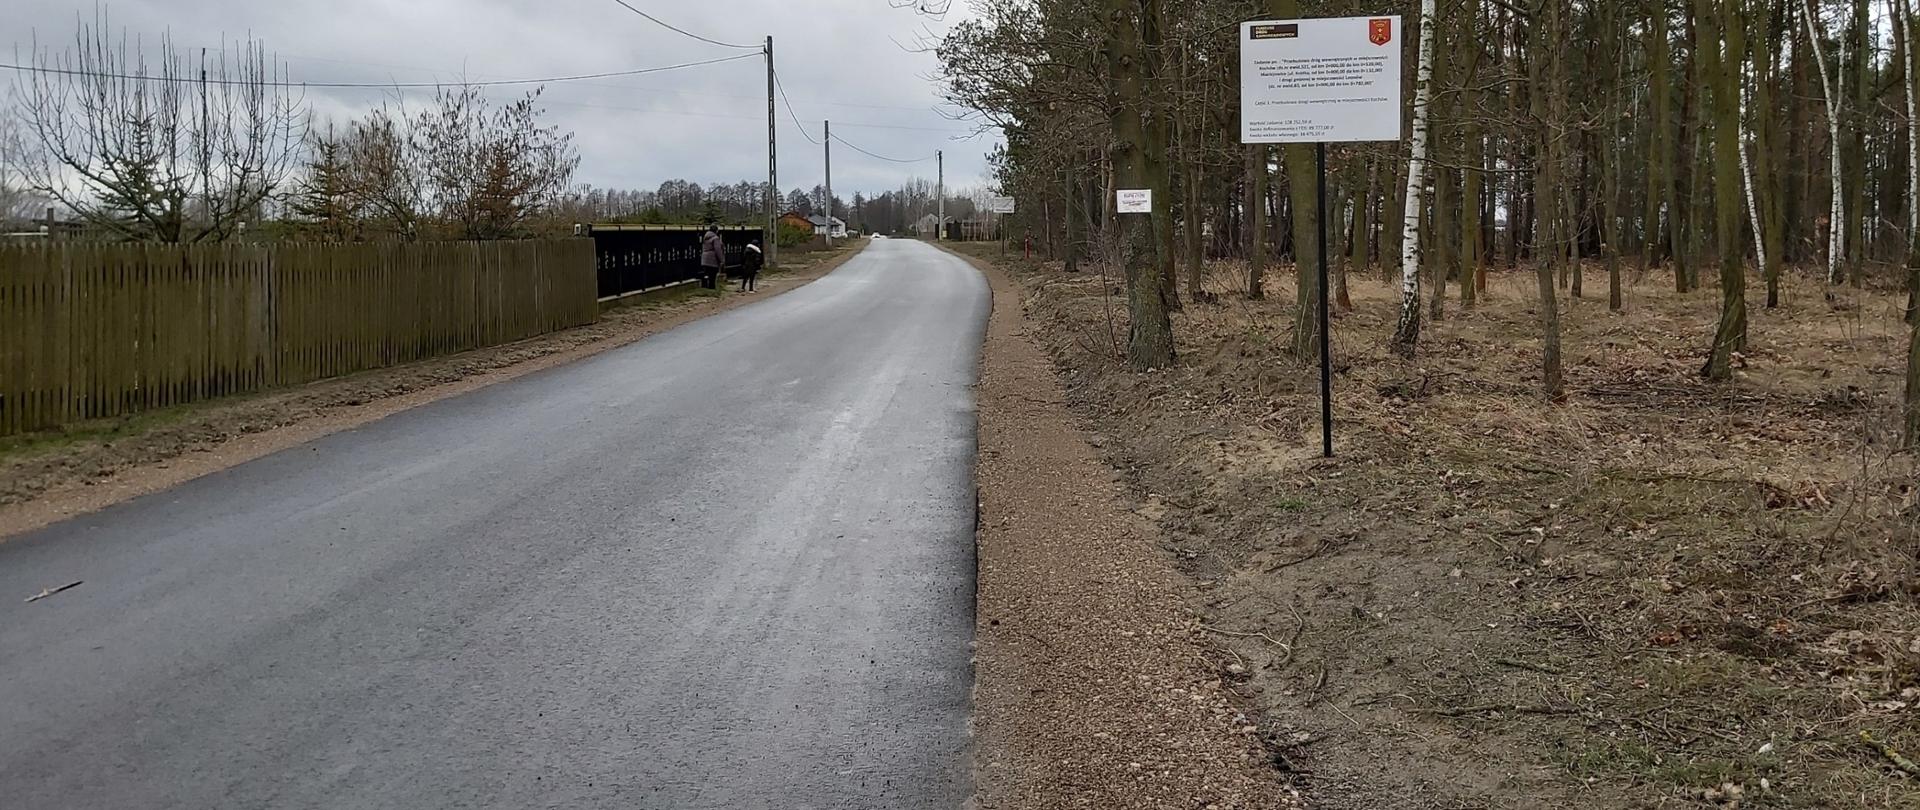 Wyremontowana droga asfaltowa w gminie Maciejowice.